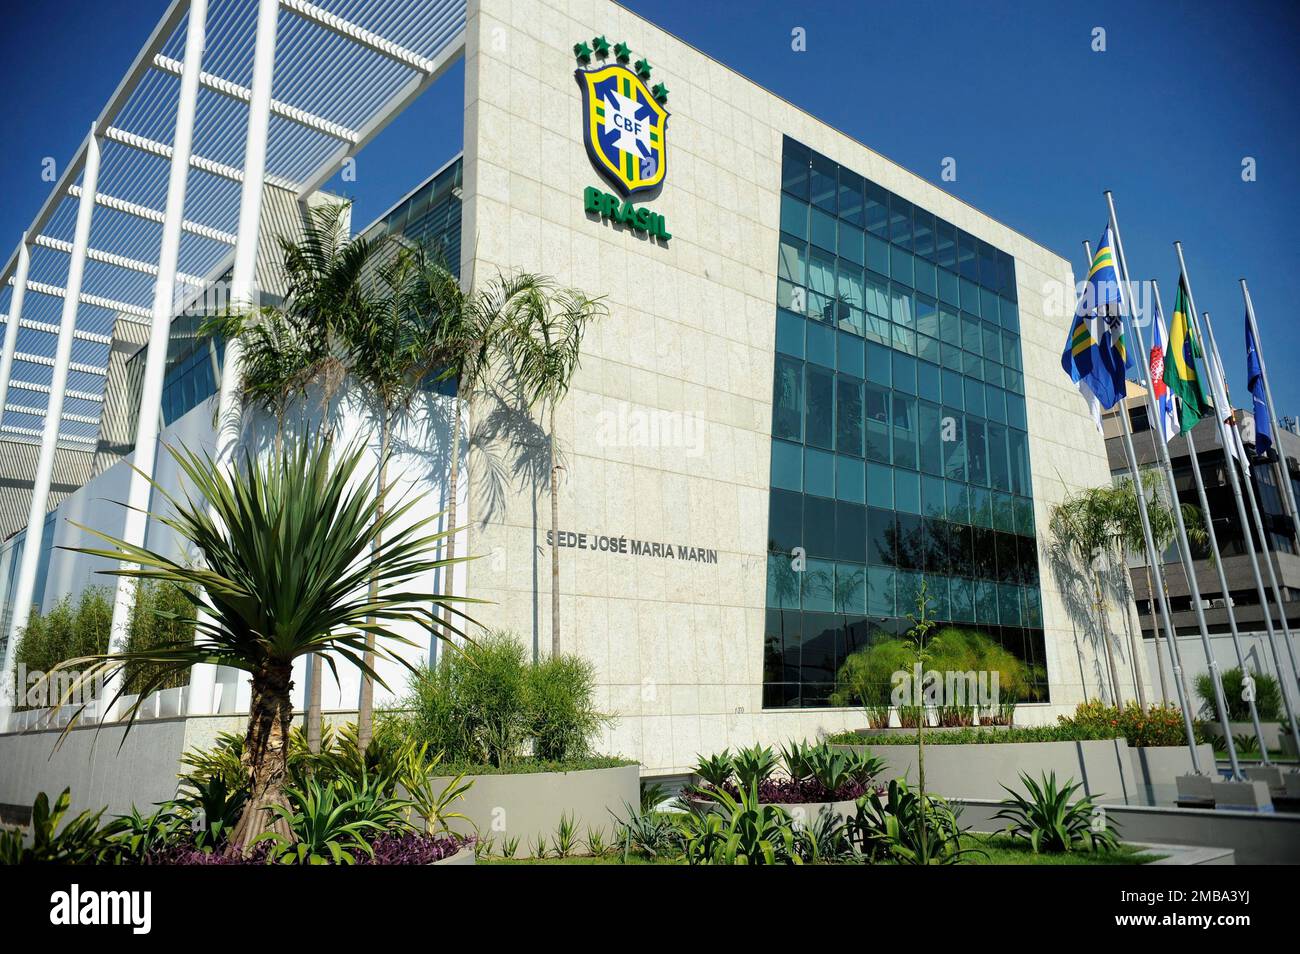 Confederazione brasiliana di calcio CBF sede centrale edificio, vista generale. L'emblema della confederazione di calcio è visto sulla parte anteriore - 07.17.2014 Foto Stock